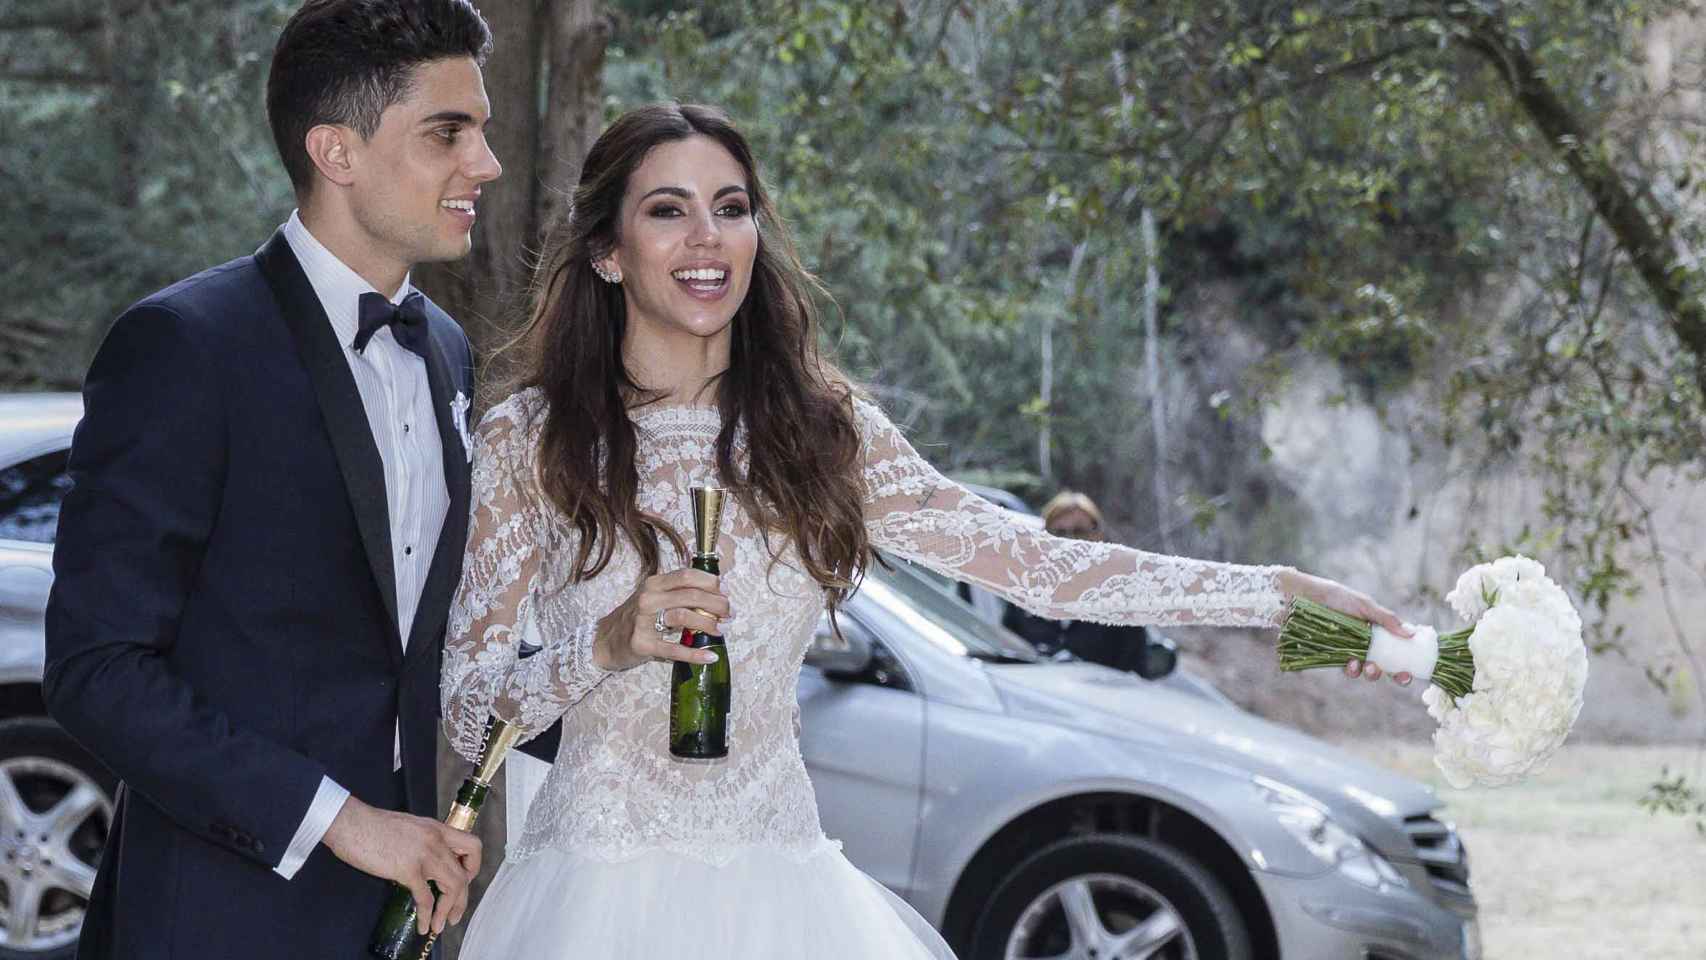 La boda de Melissa Jiménez y Marc Bartra, en imágenes